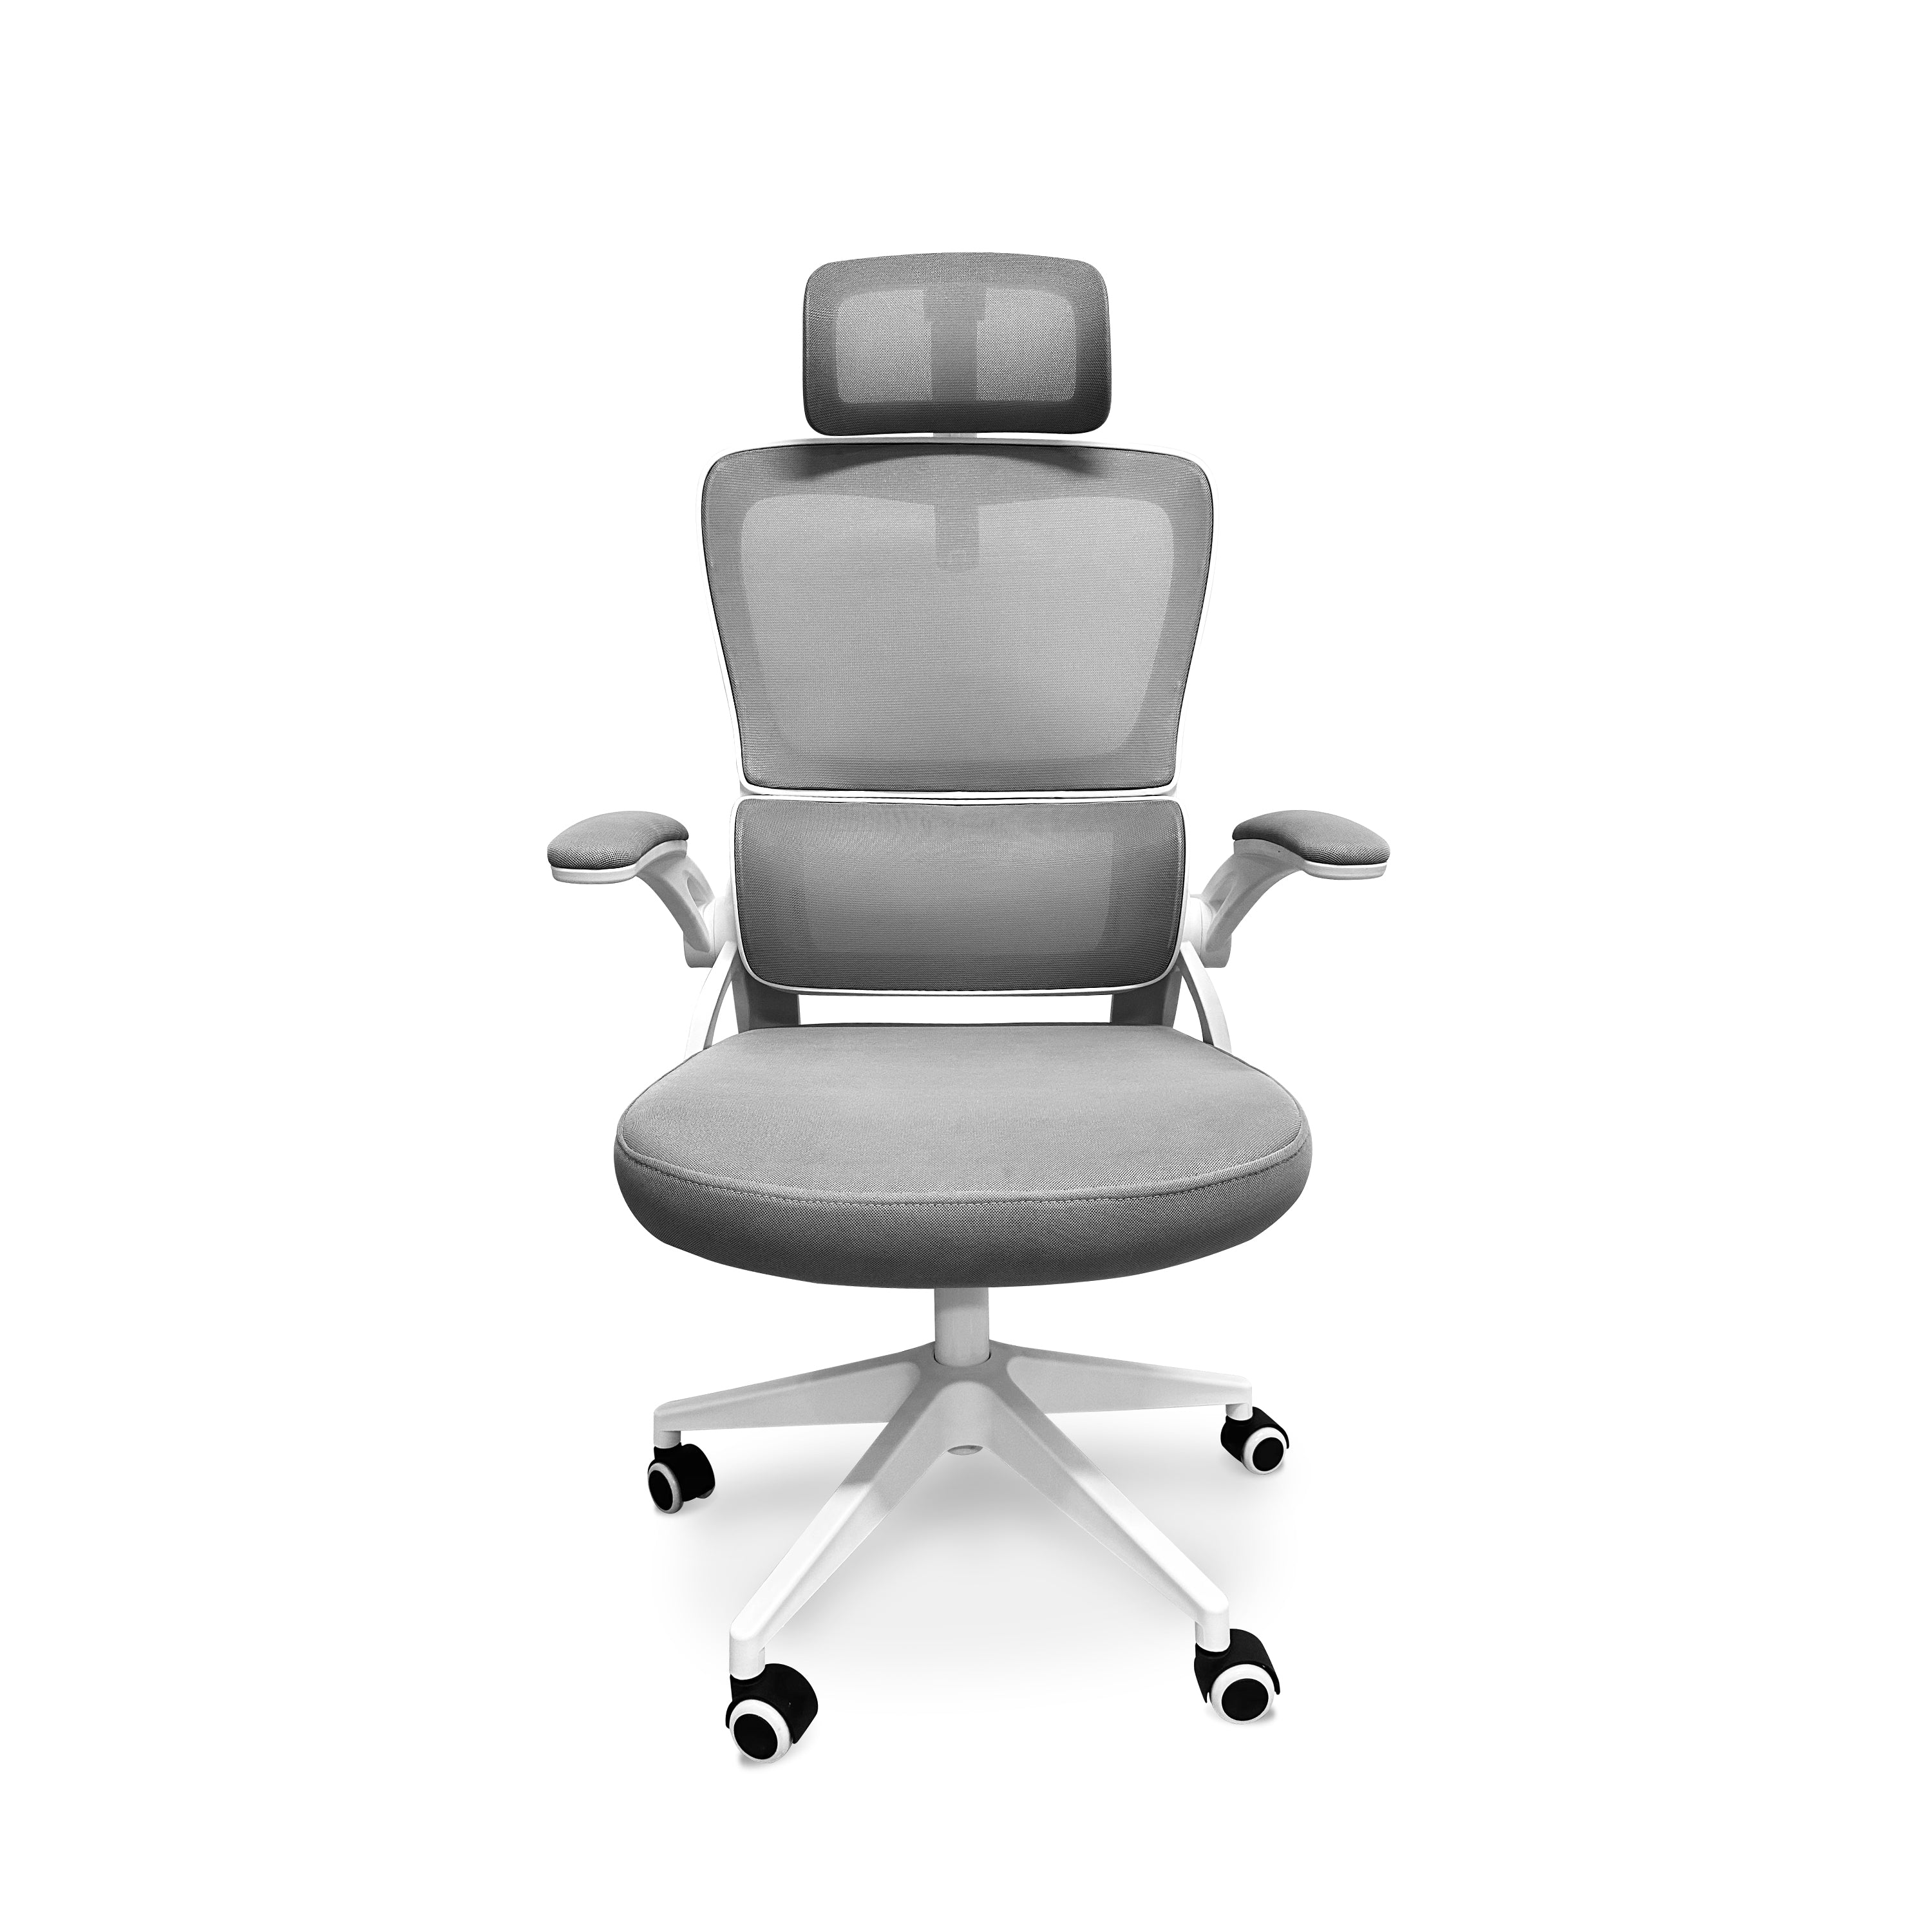 Lyn - Sedia da uffico ergonomica ad altezza regolabile, dotata di poggiatesta, imbottitura lombare e ruote girevoli - colore bianco e grigio